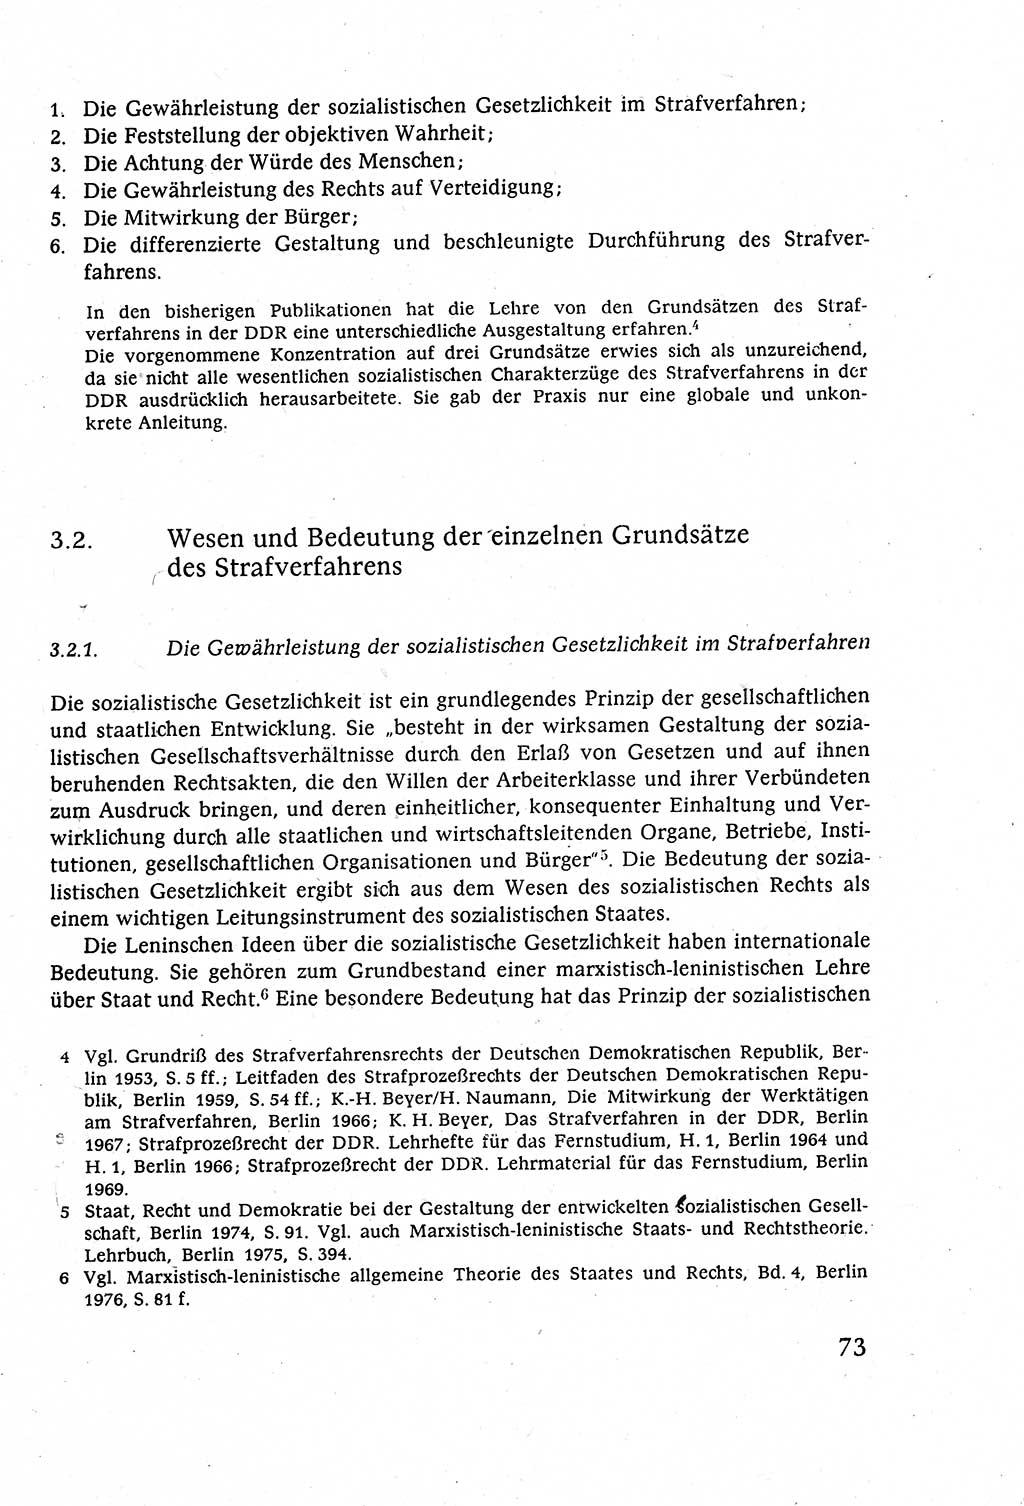 Strafverfahrensrecht [Deutsche Demokratische Republik (DDR)], Lehrbuch 1977, Seite 73 (Strafverf.-R. DDR Lb. 1977, S. 73)